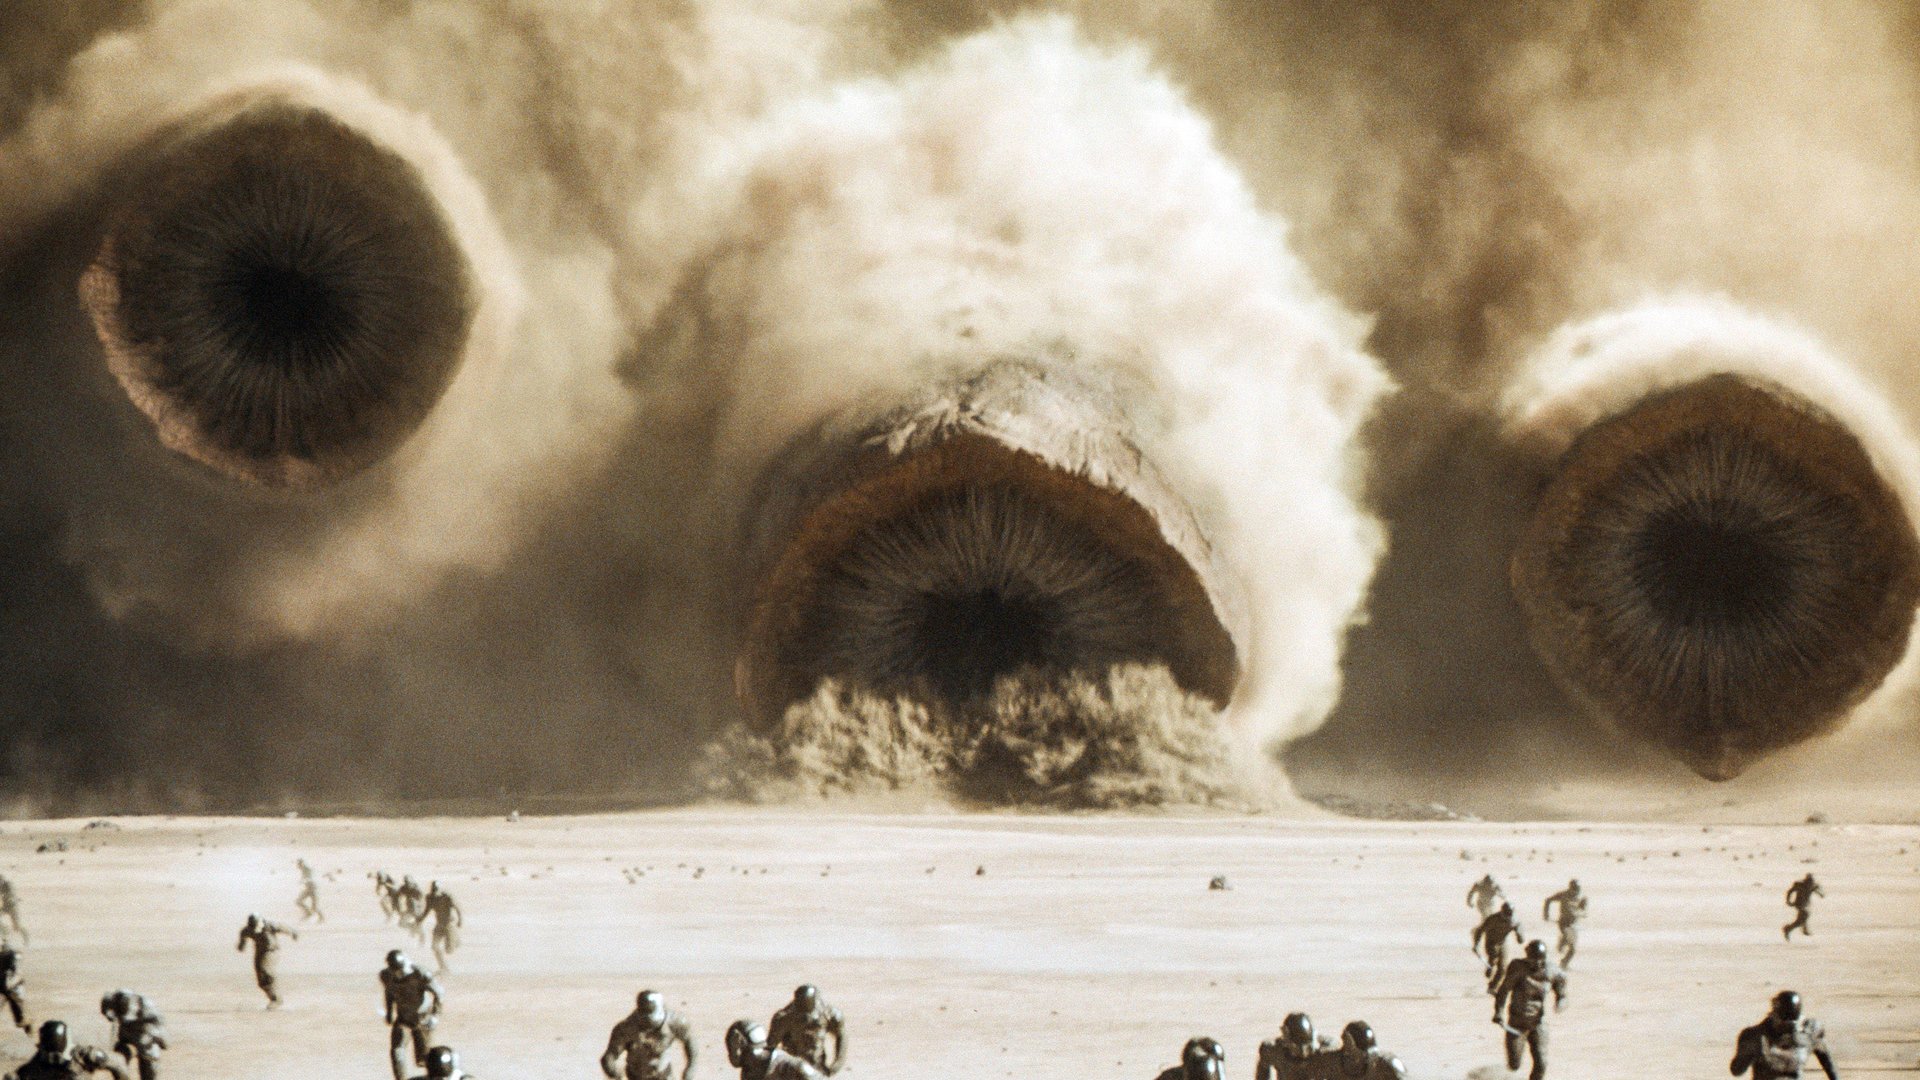 #„Dune 2”-Regisseur will Sandwurm-Frage noch beantworten